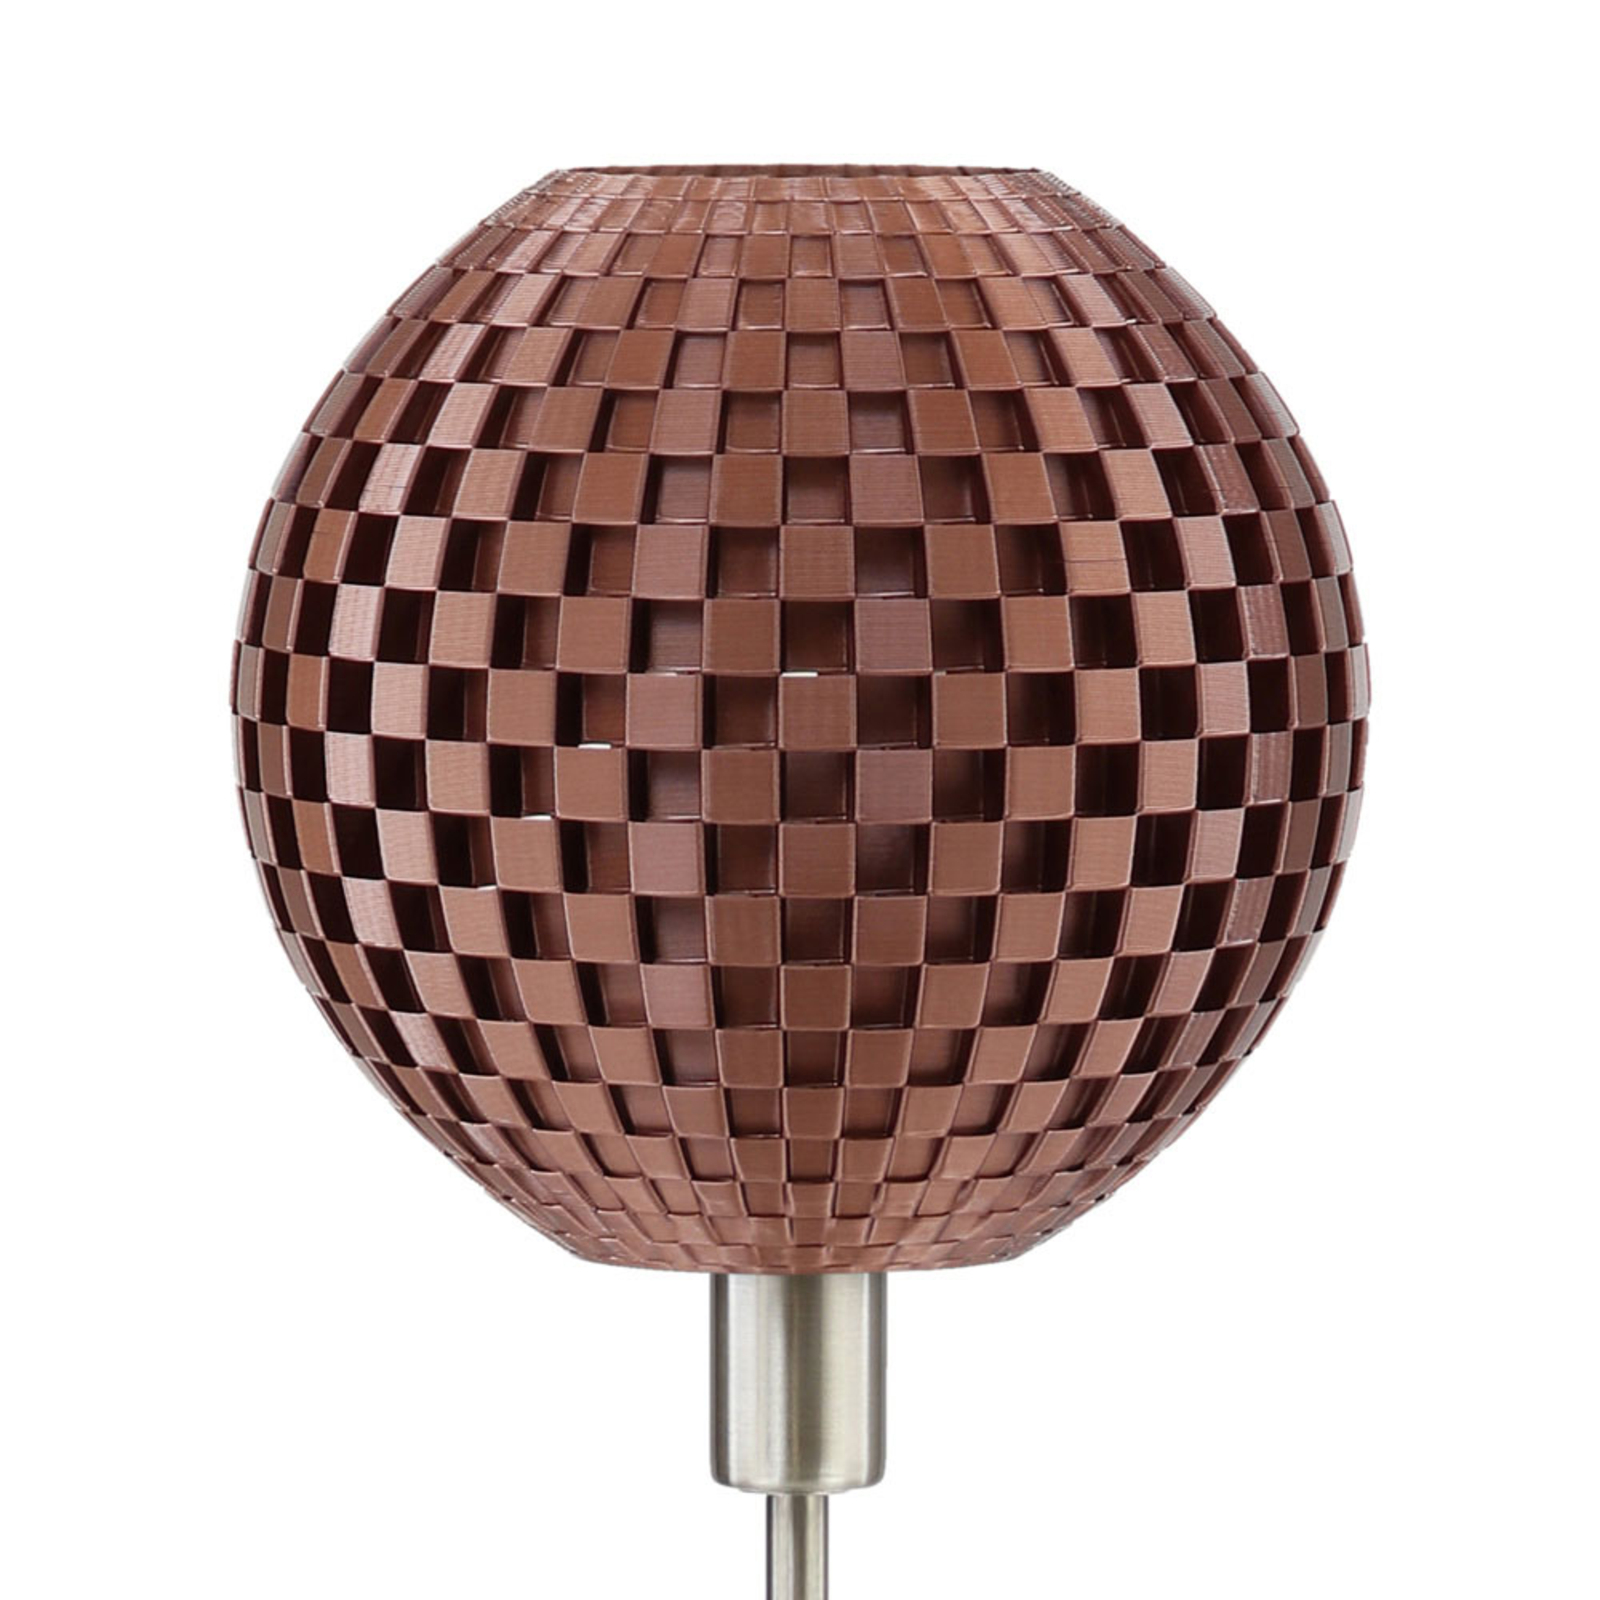 Flechtwerk table lamp, globe with base, copper